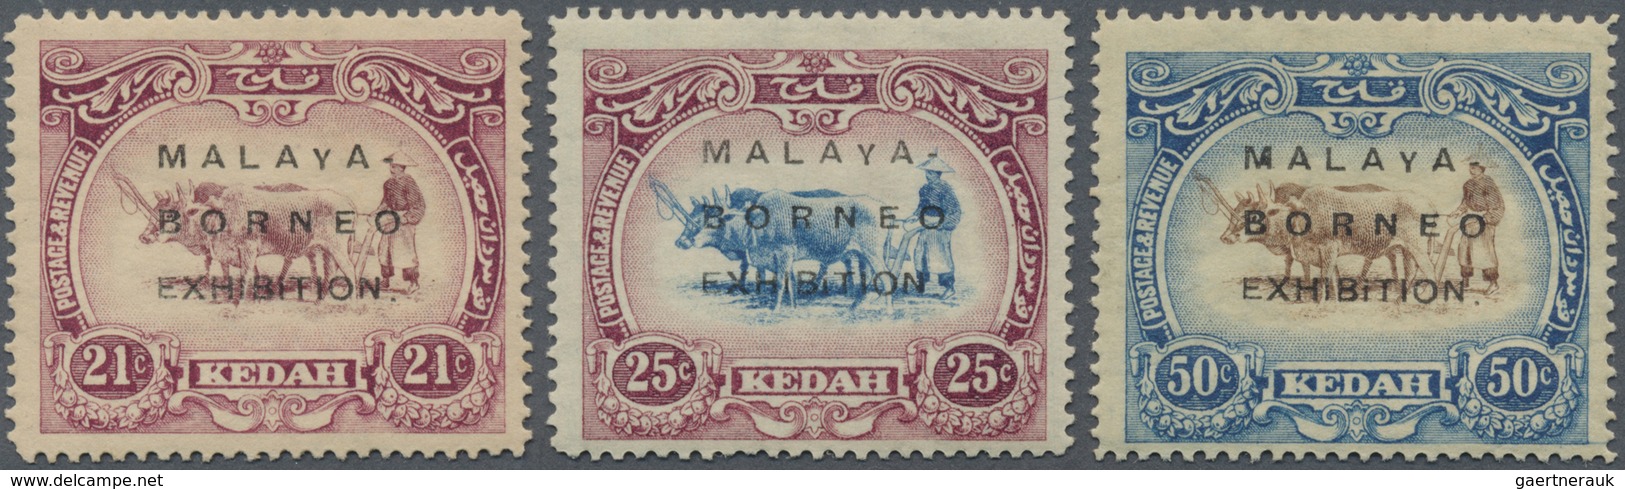 * Malaiische Staaten - Kedah: 1922, Malaya-Borneo Exhibition Complete Set Of Three With Opt. In Type I - Kedah